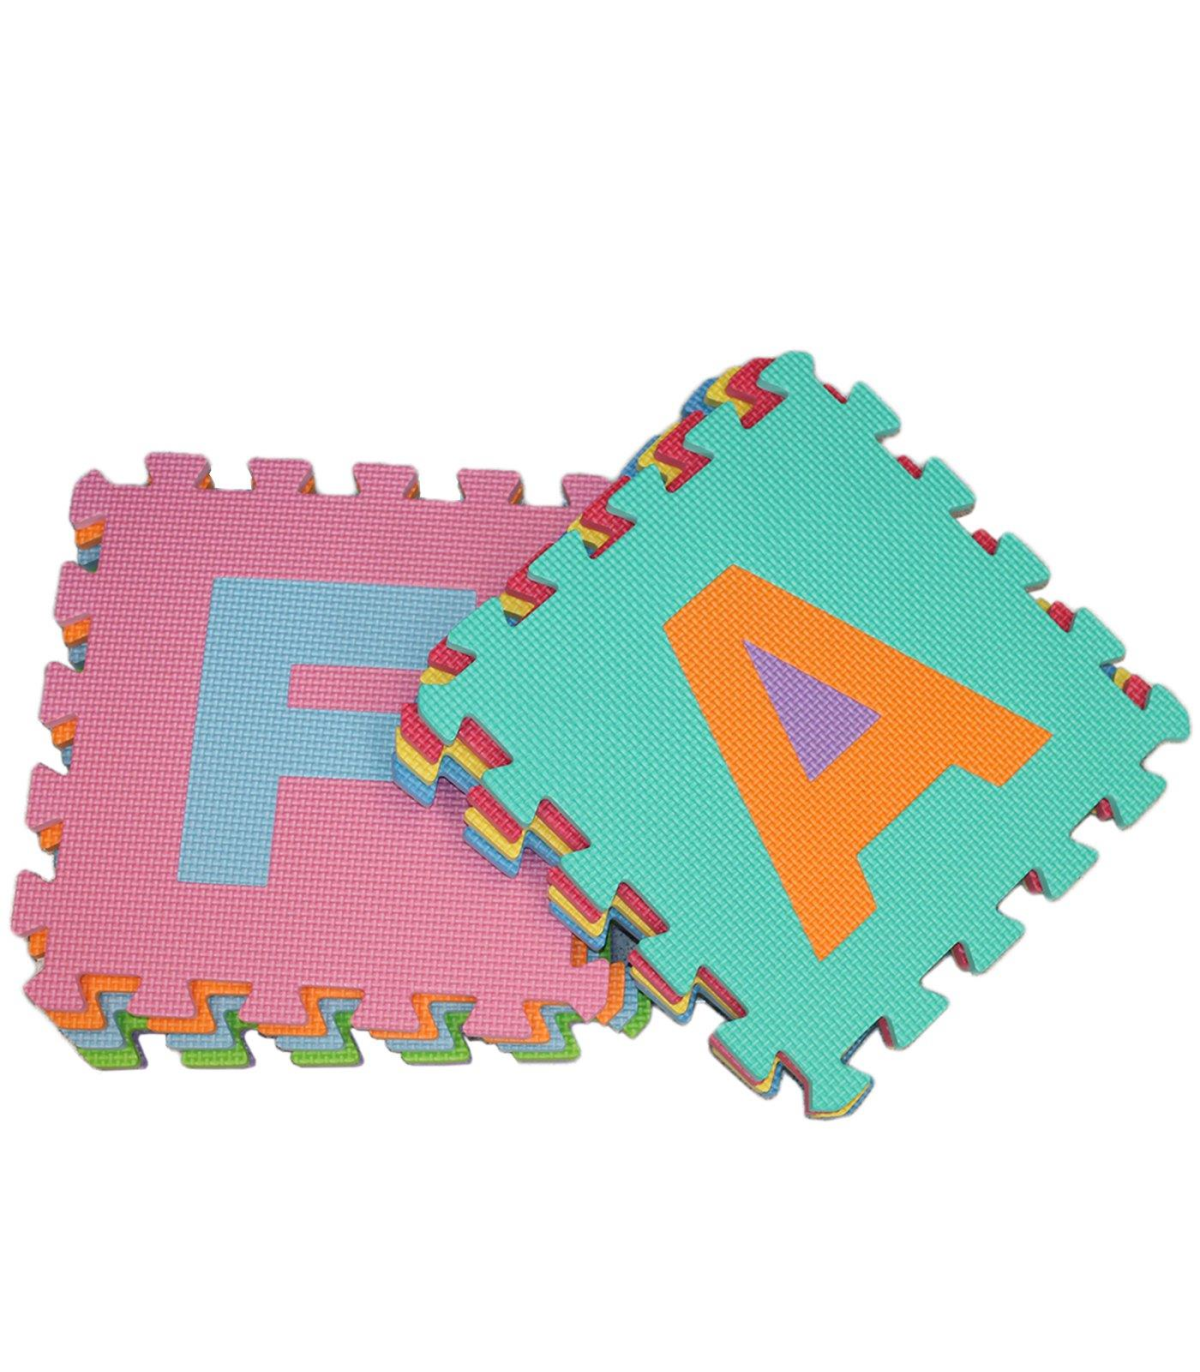 Tradineur - Pack 10 baldosas de goma eva 31.5 x cm con letras. Esterilla, puzzle para suelo de fitness y gimnasio, a